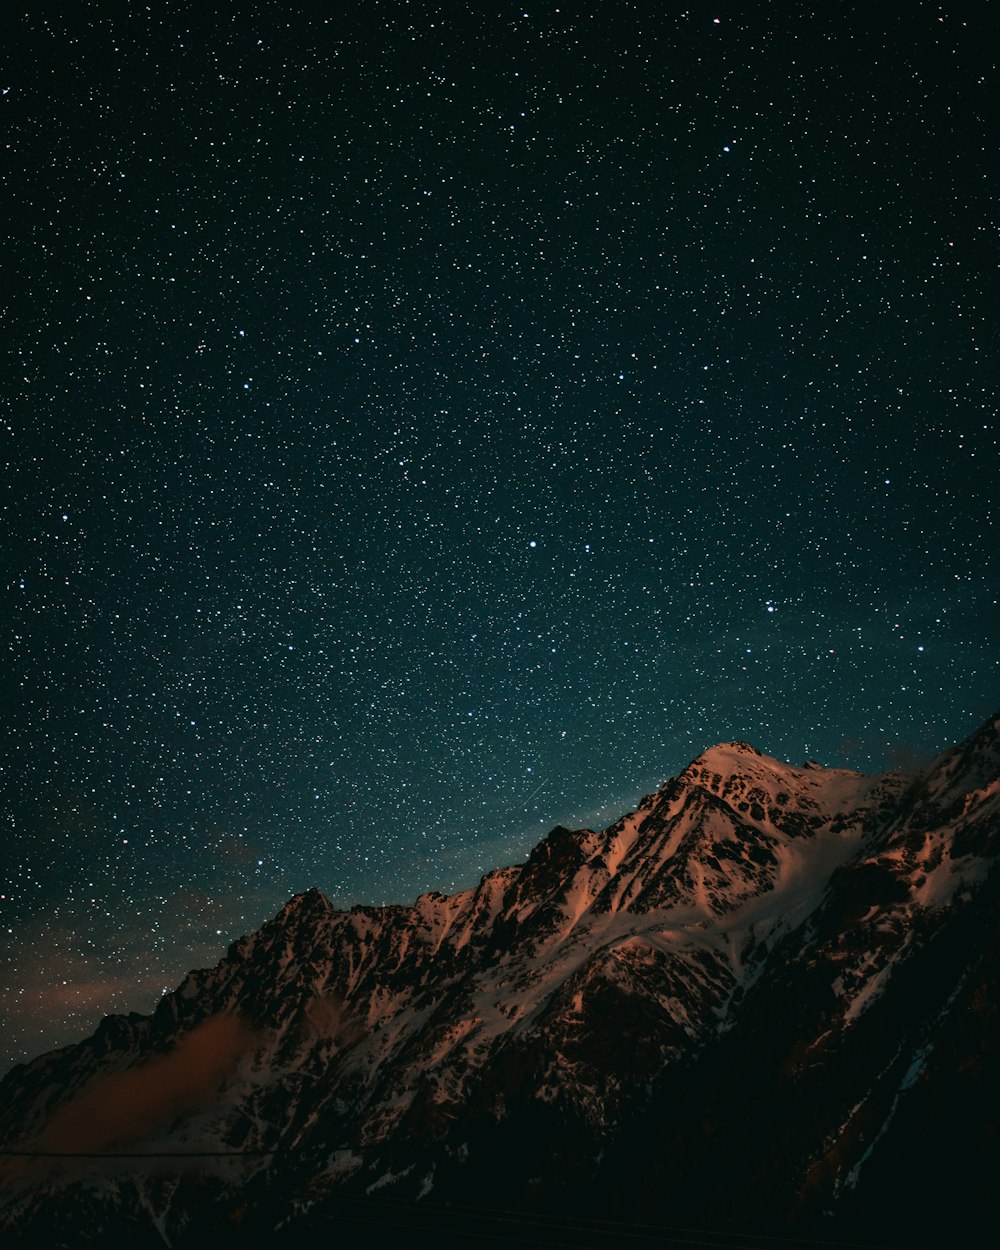 montagne brune et noire sous le ciel bleu pendant la nuit